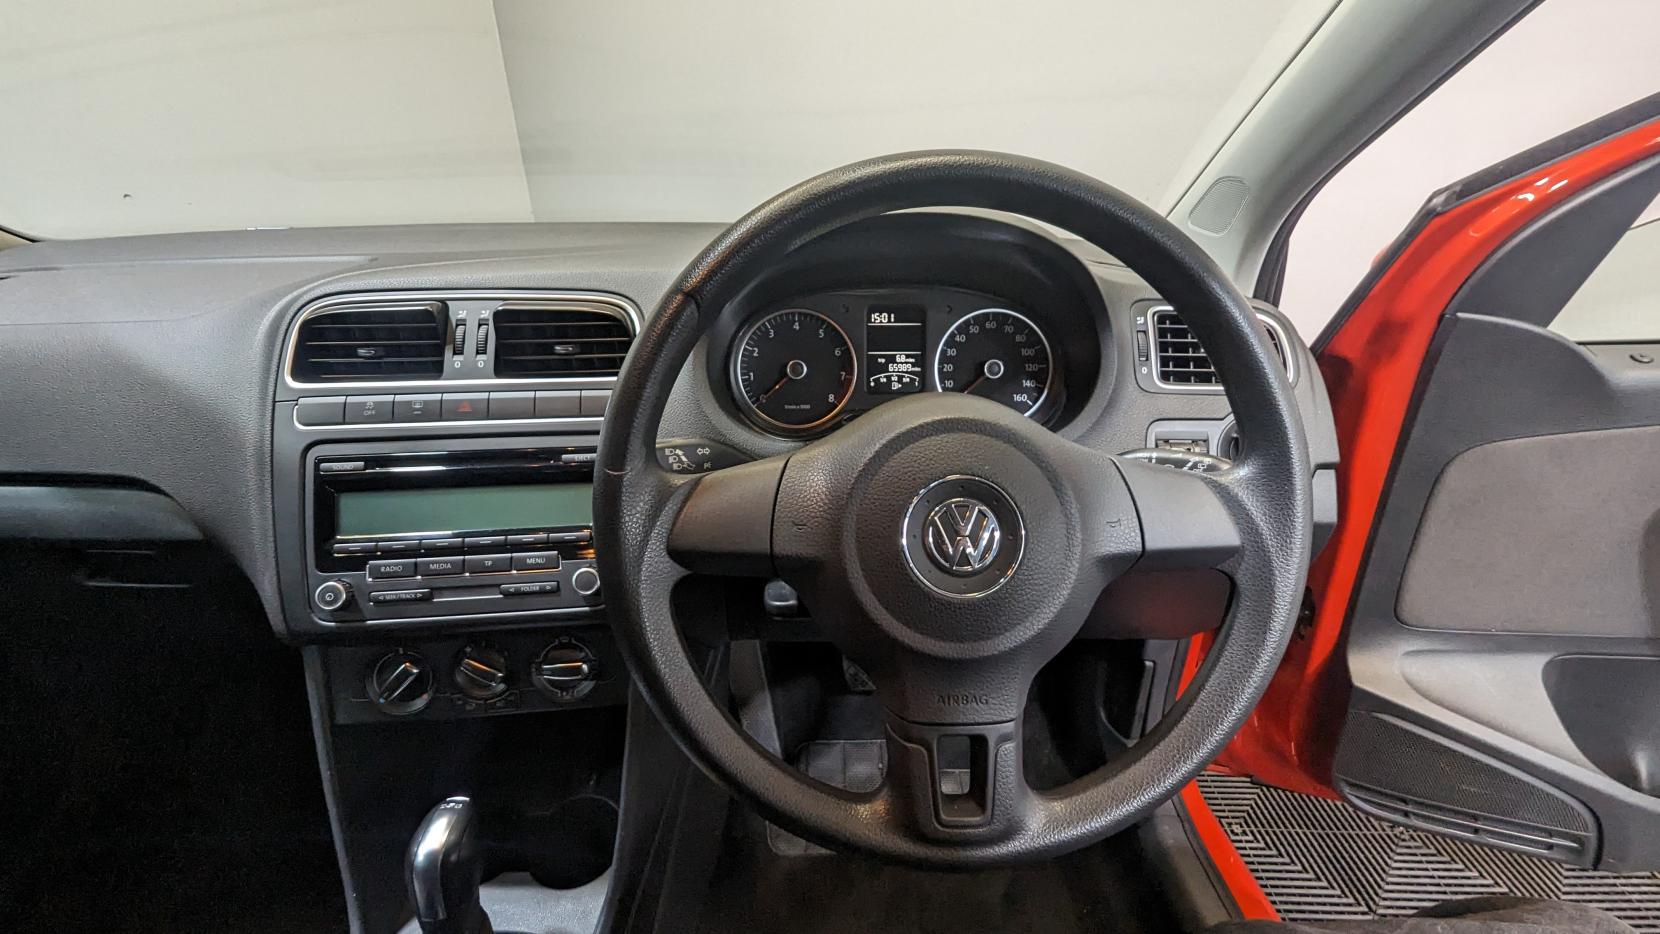 Volkswagen Polo 1.4 SE Hatchback 5dr Petrol DSG Euro 5 (85 ps)